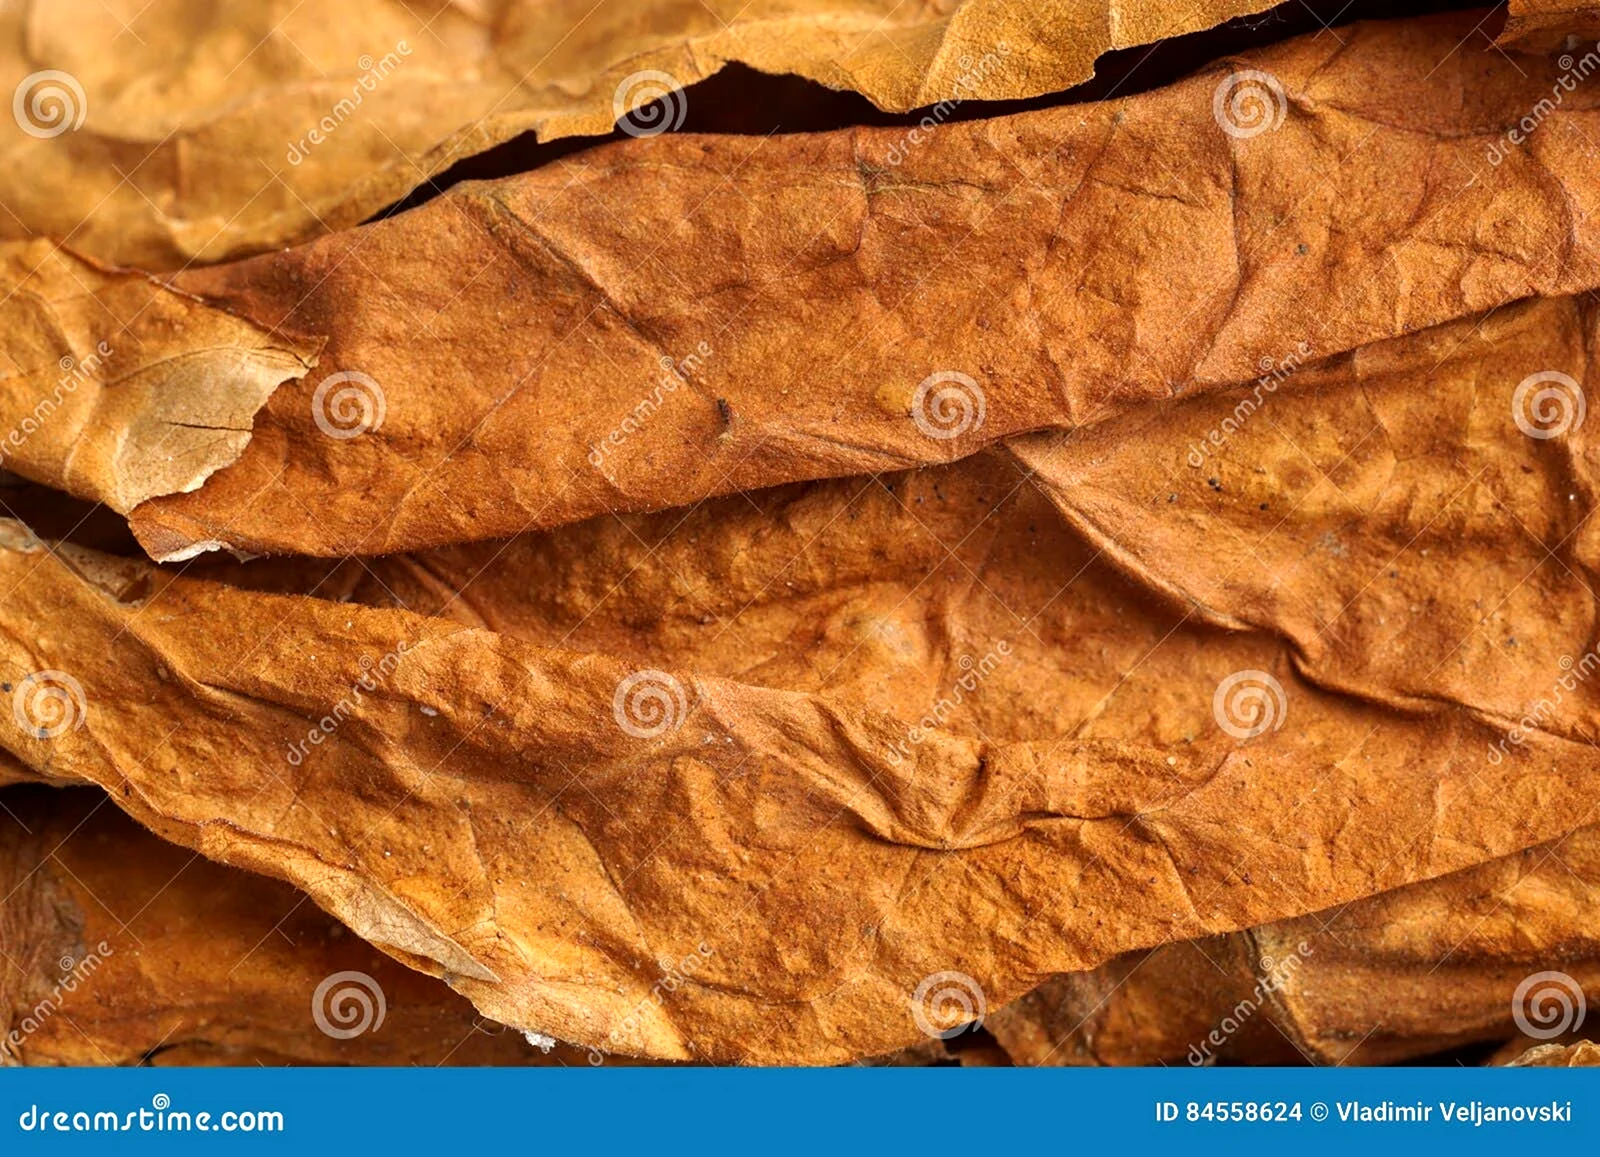 Цвет табачного листа